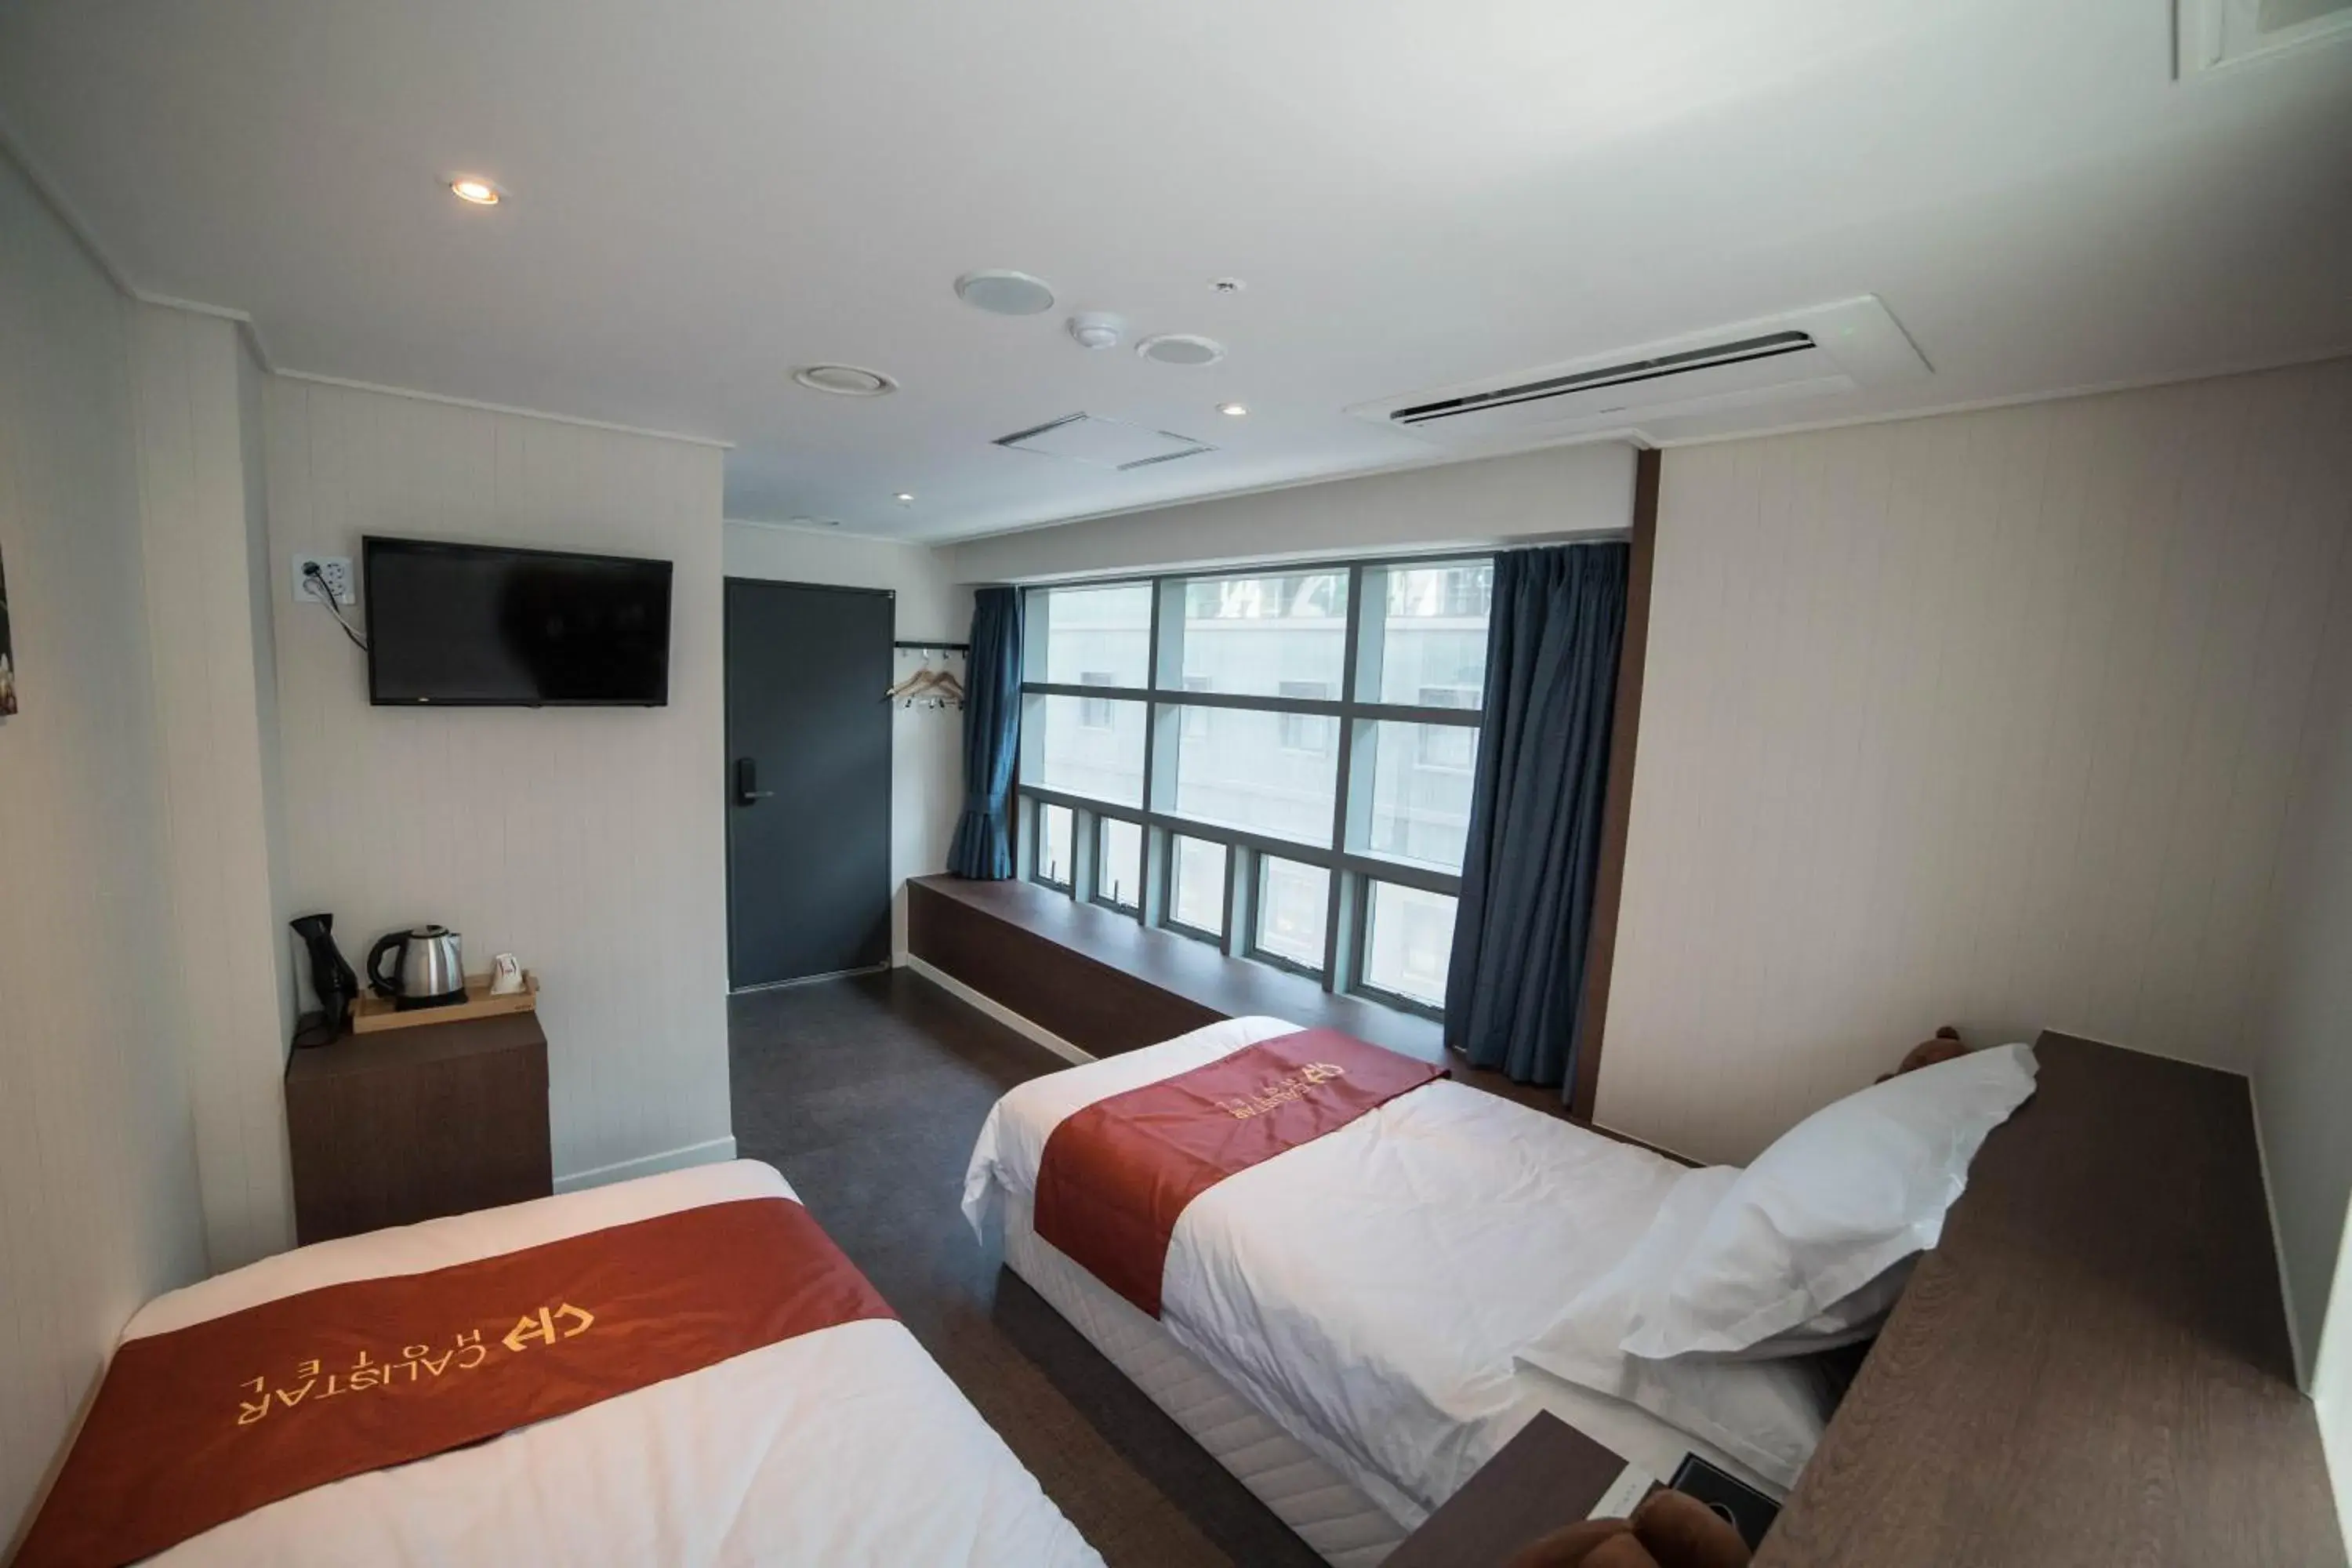 Bedroom in Calistar Hotel